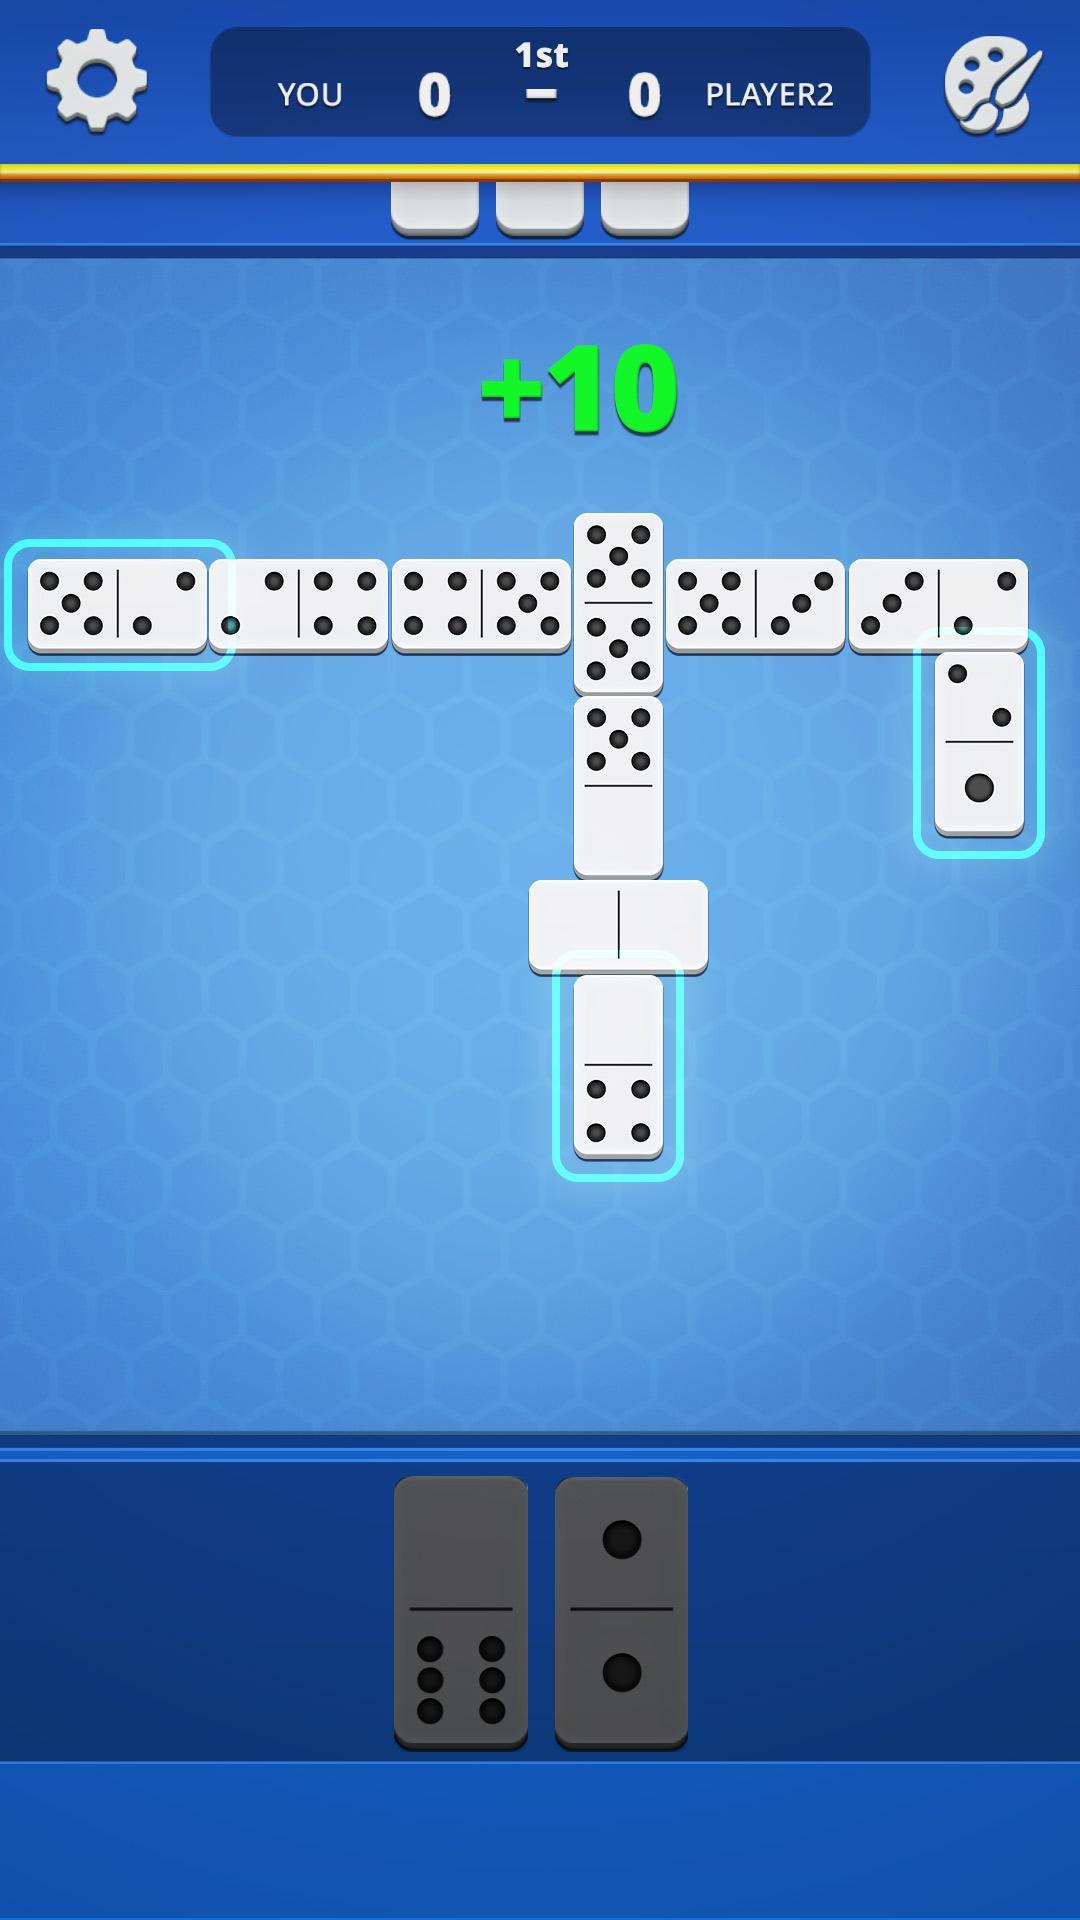 Dominoes Classic Domino Tile Based Game 1.2.5 Screenshot 13